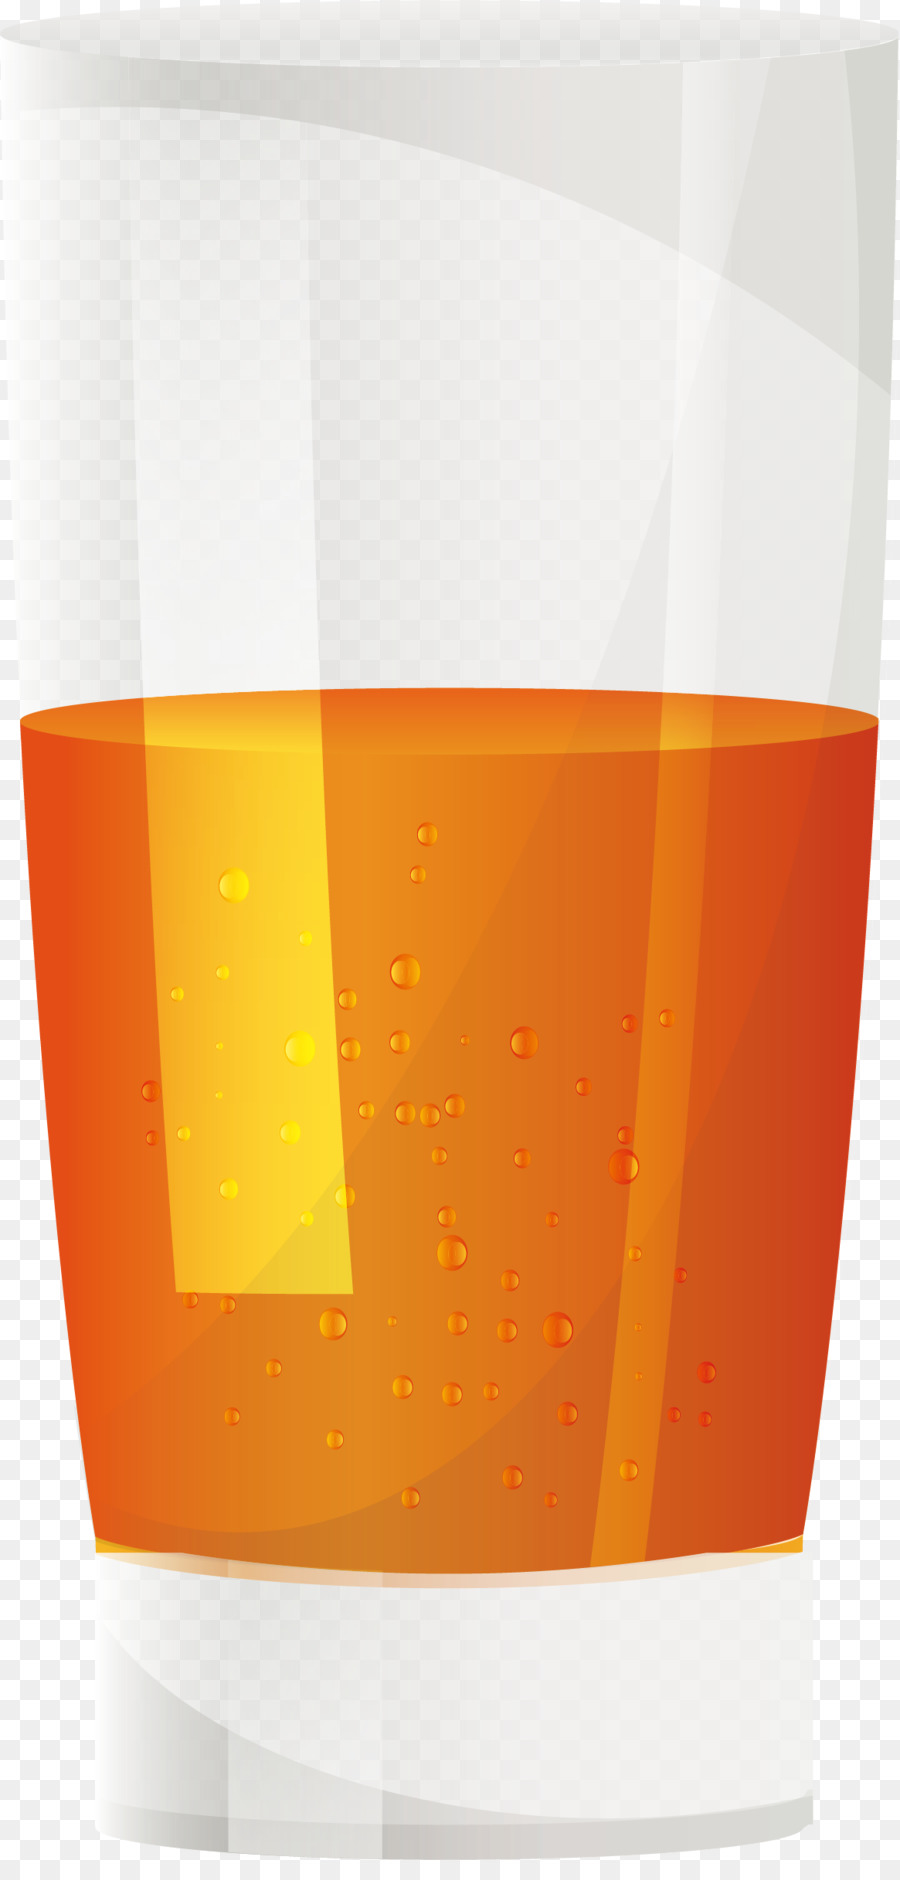 Orangensaft Soft drink Fresca - Eine halbe Tasse Orangensaft